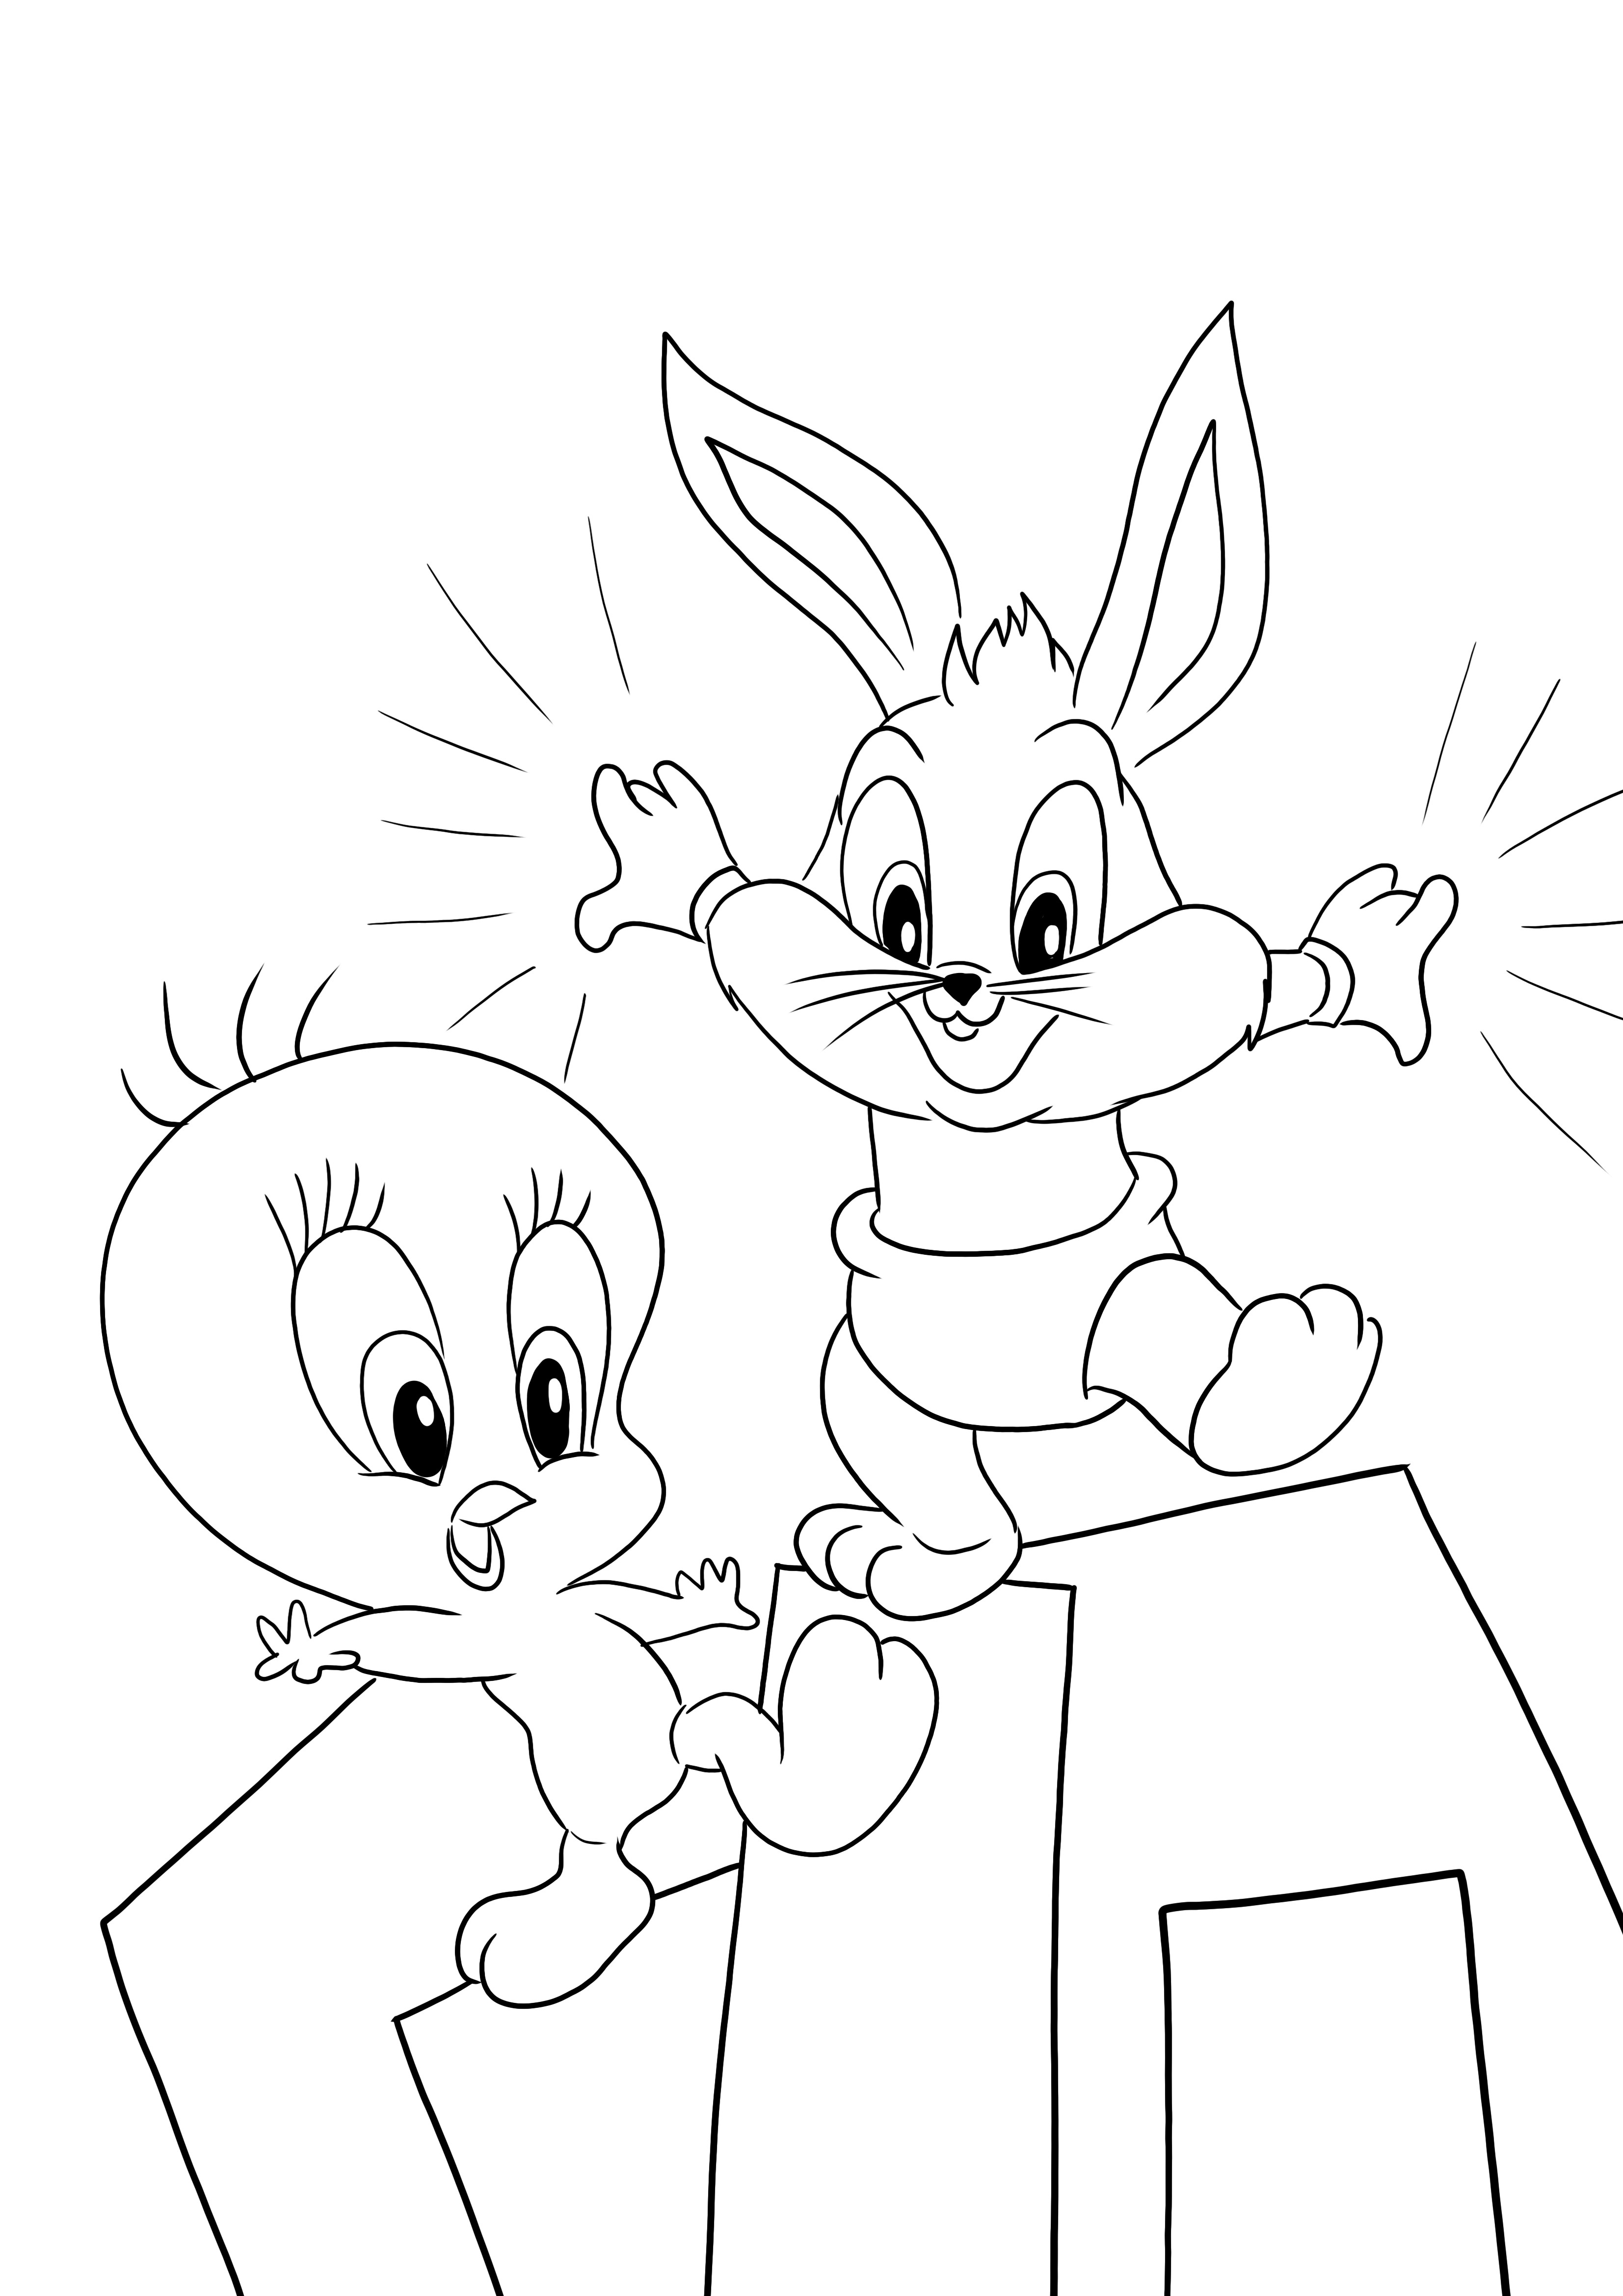 Tweety dan Bugs Bunny dari Baby Looney Tunes dapat dicetak bebas untuk diwarnai